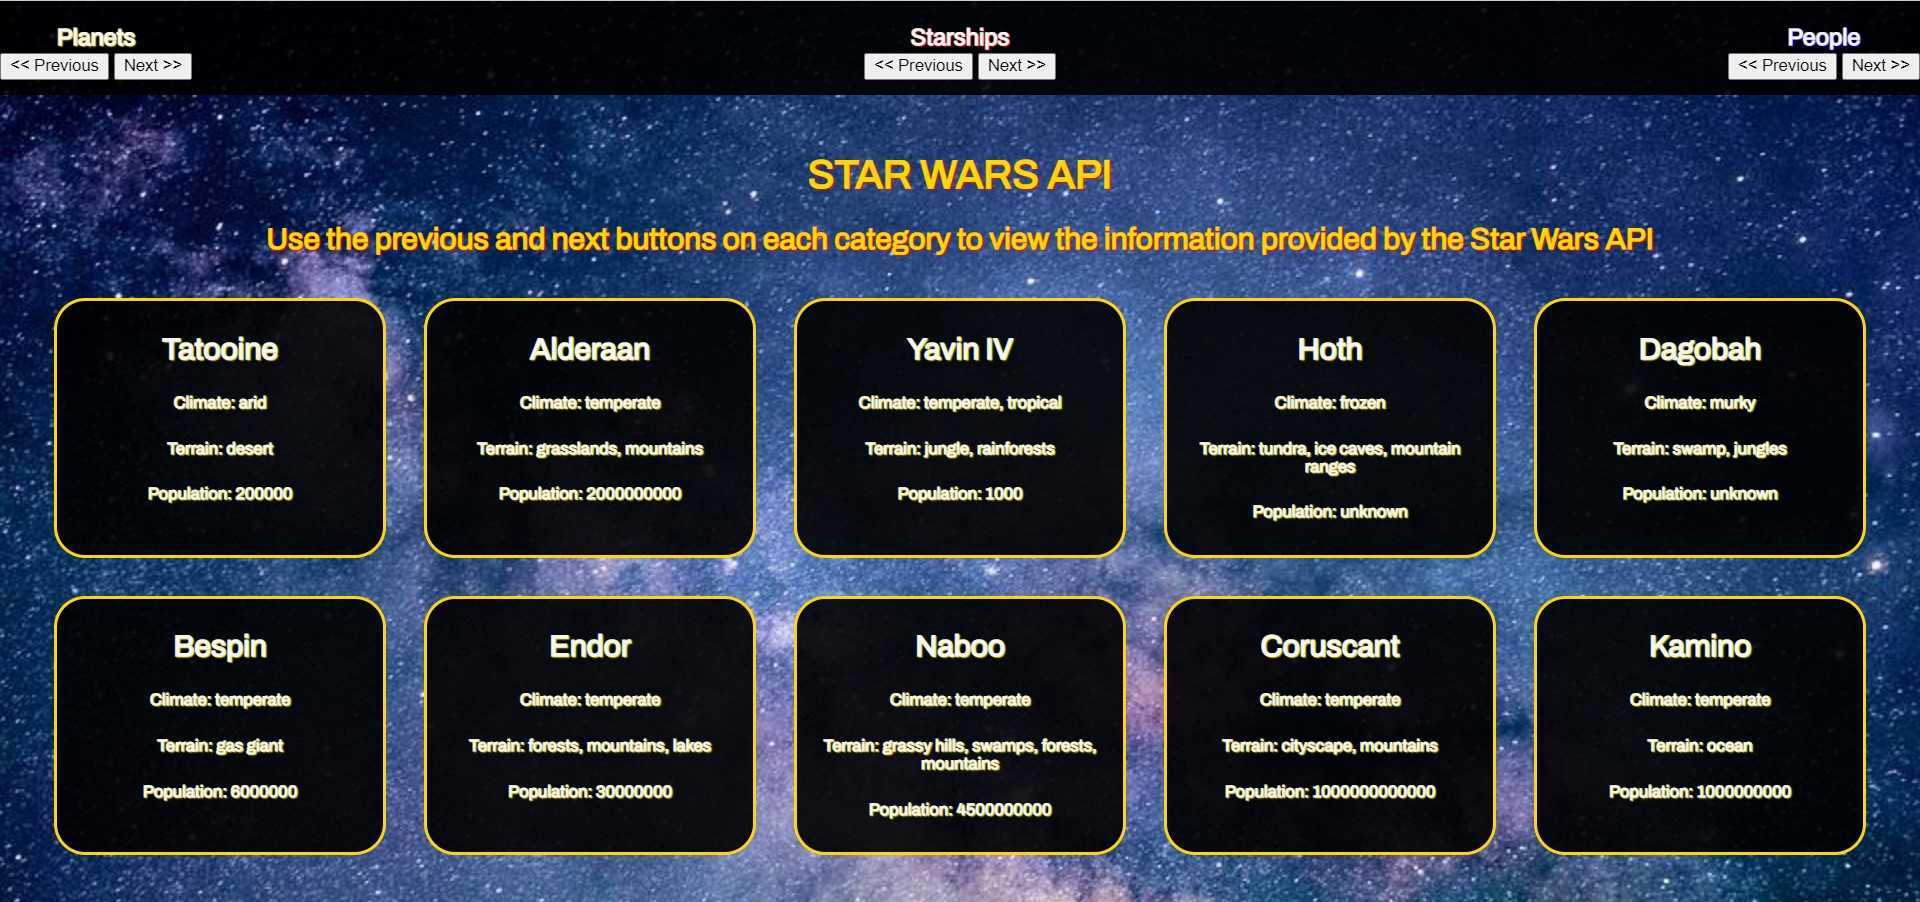 Star Wars API Project